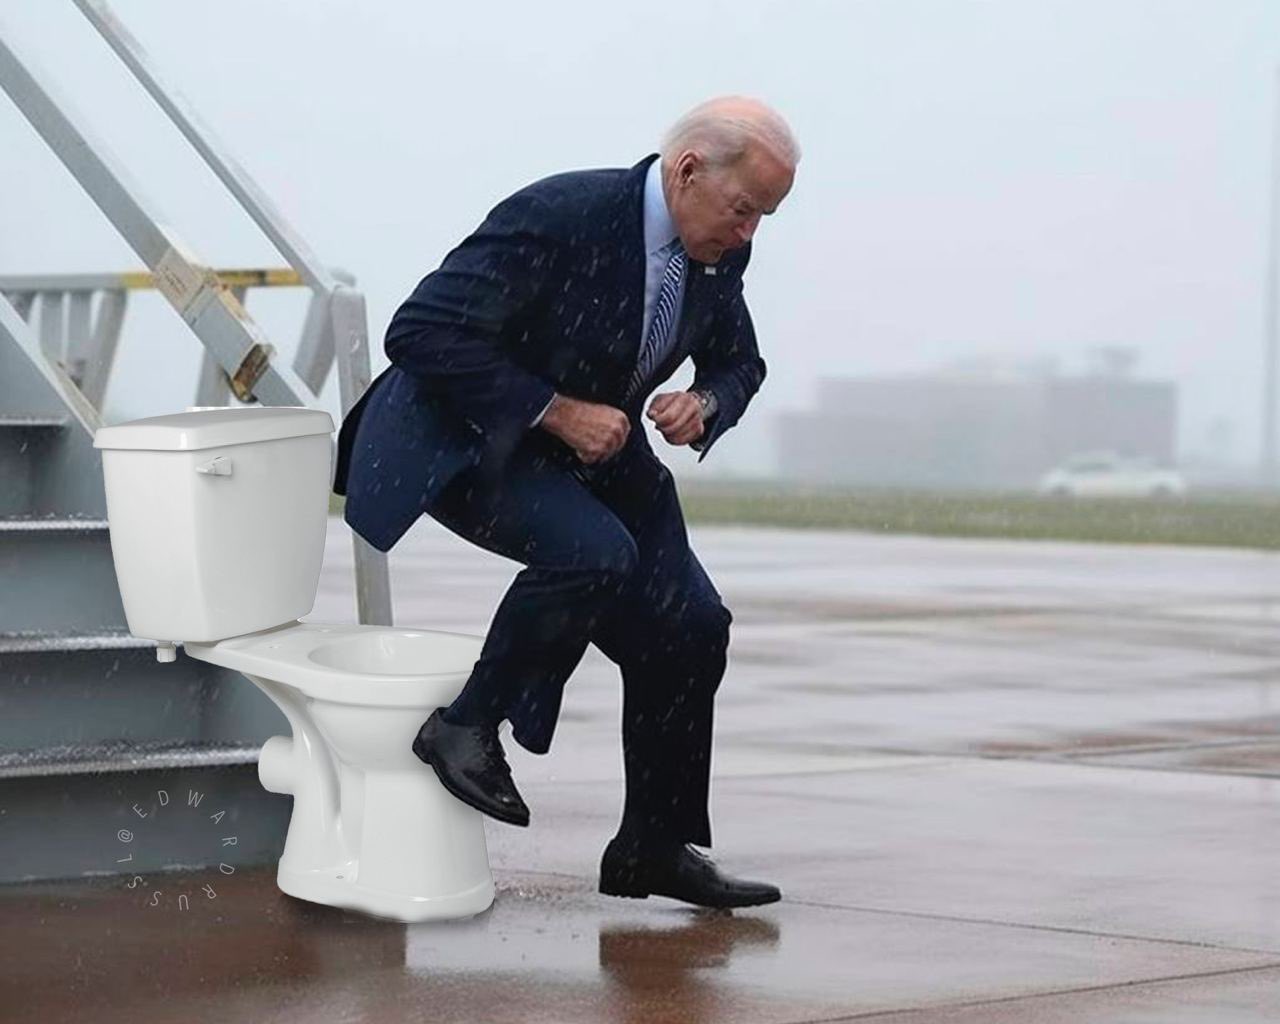 Joe Biden griddy meme - shoe